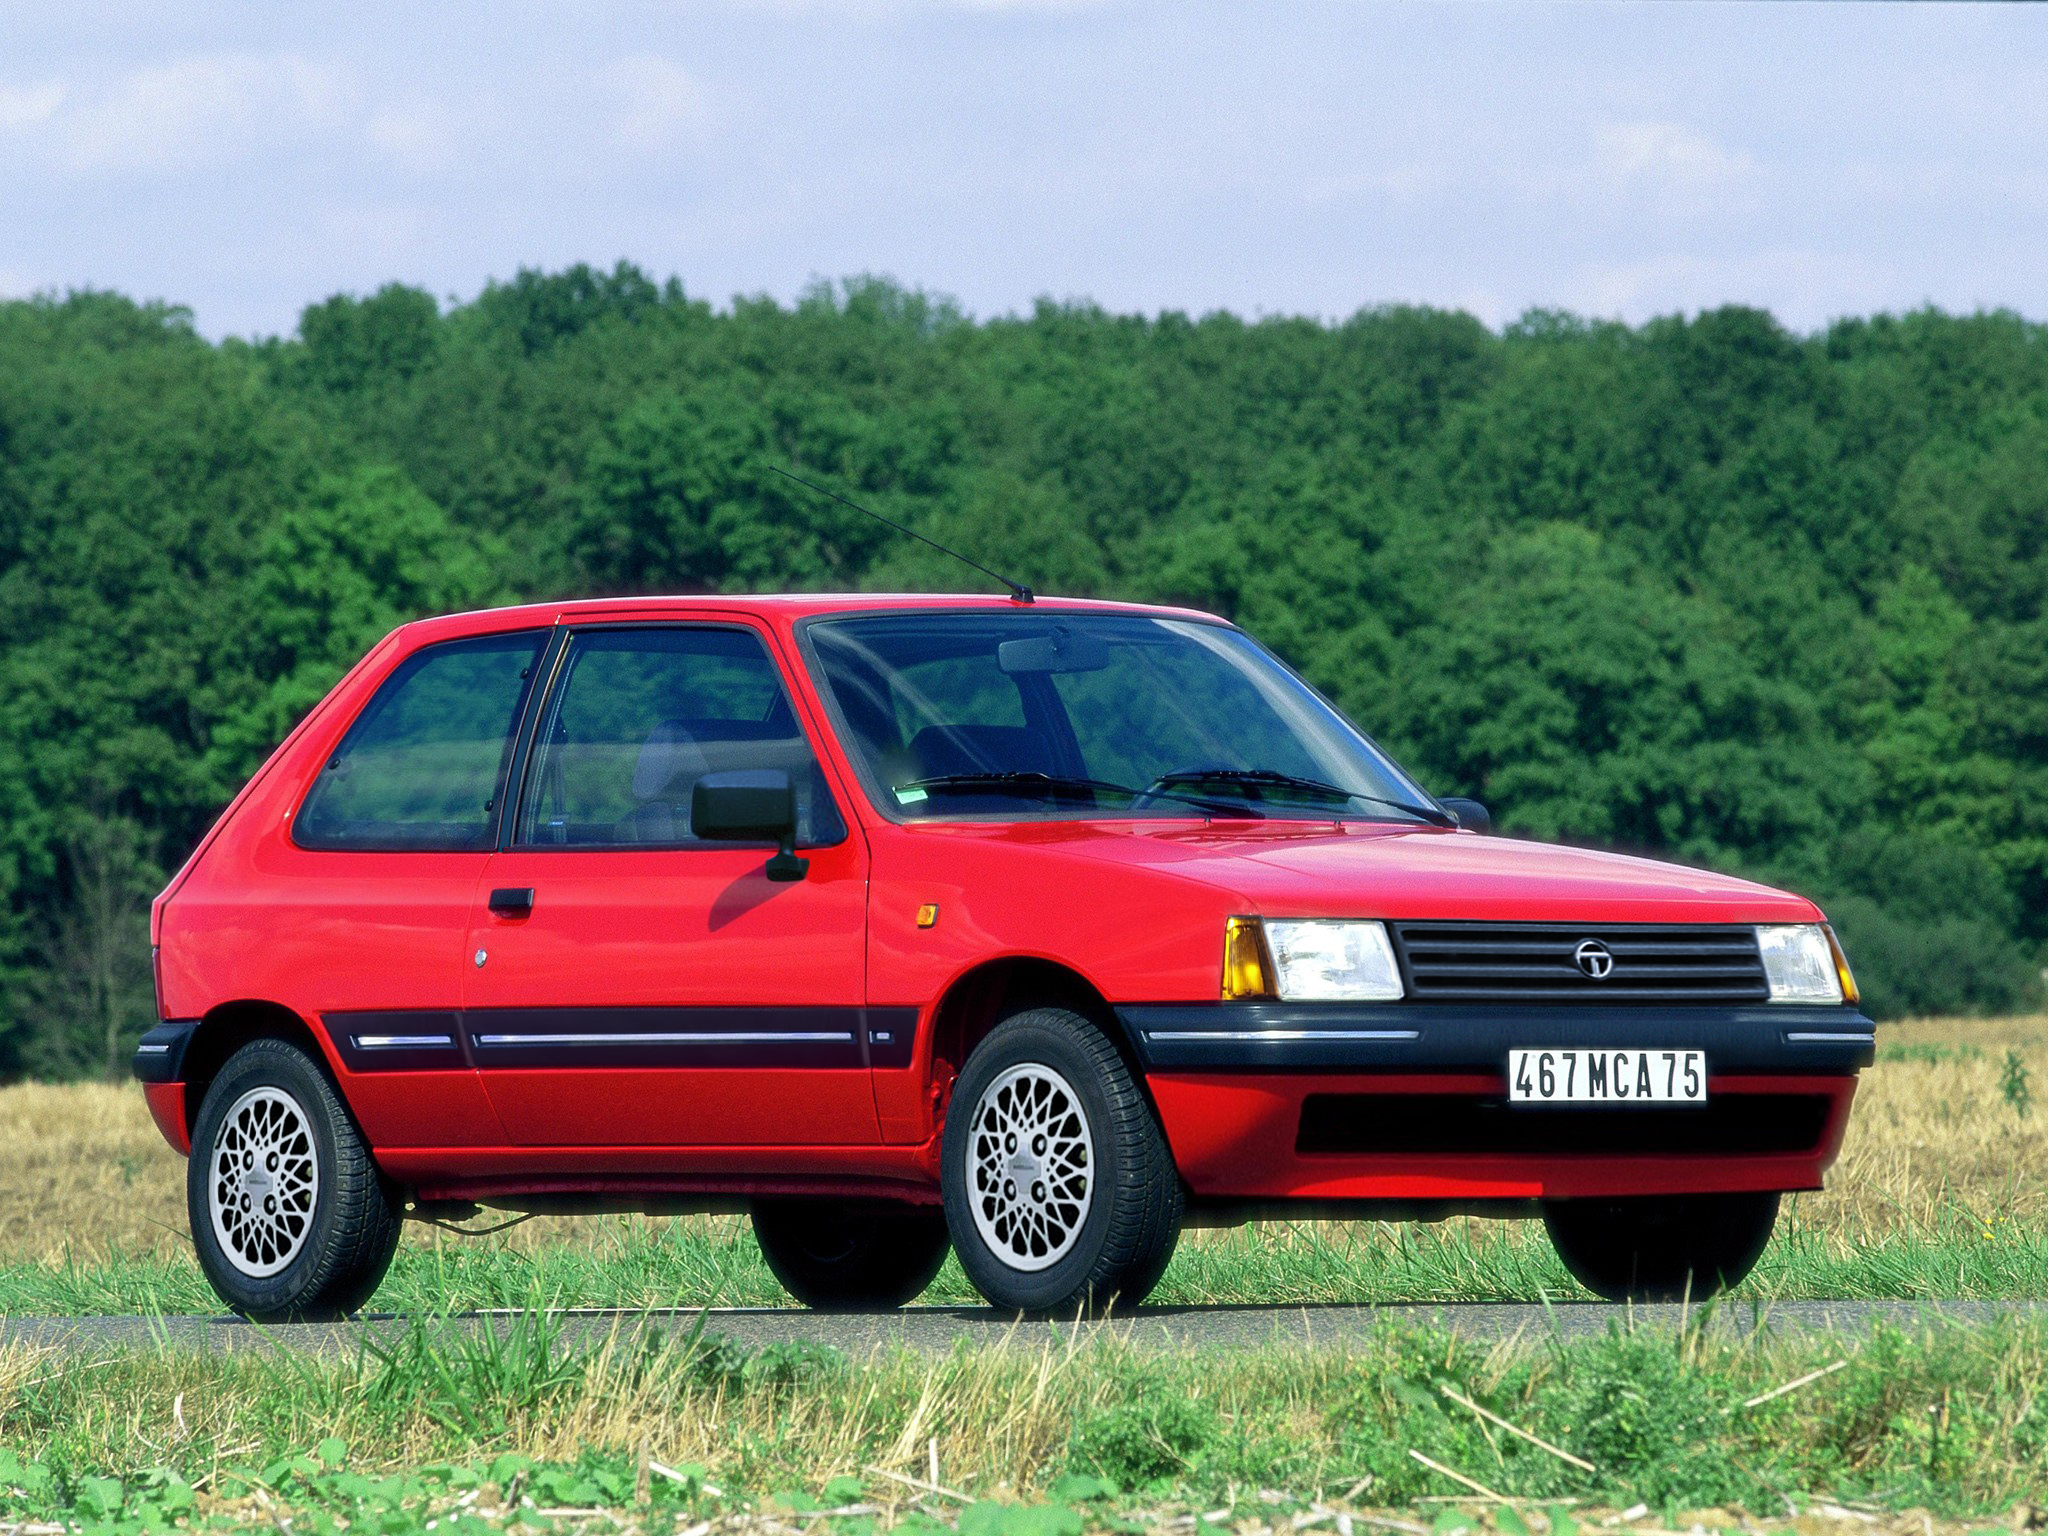 Nostalgie. Peugeot 309 : la voiture qui aurait dû être une Talbot